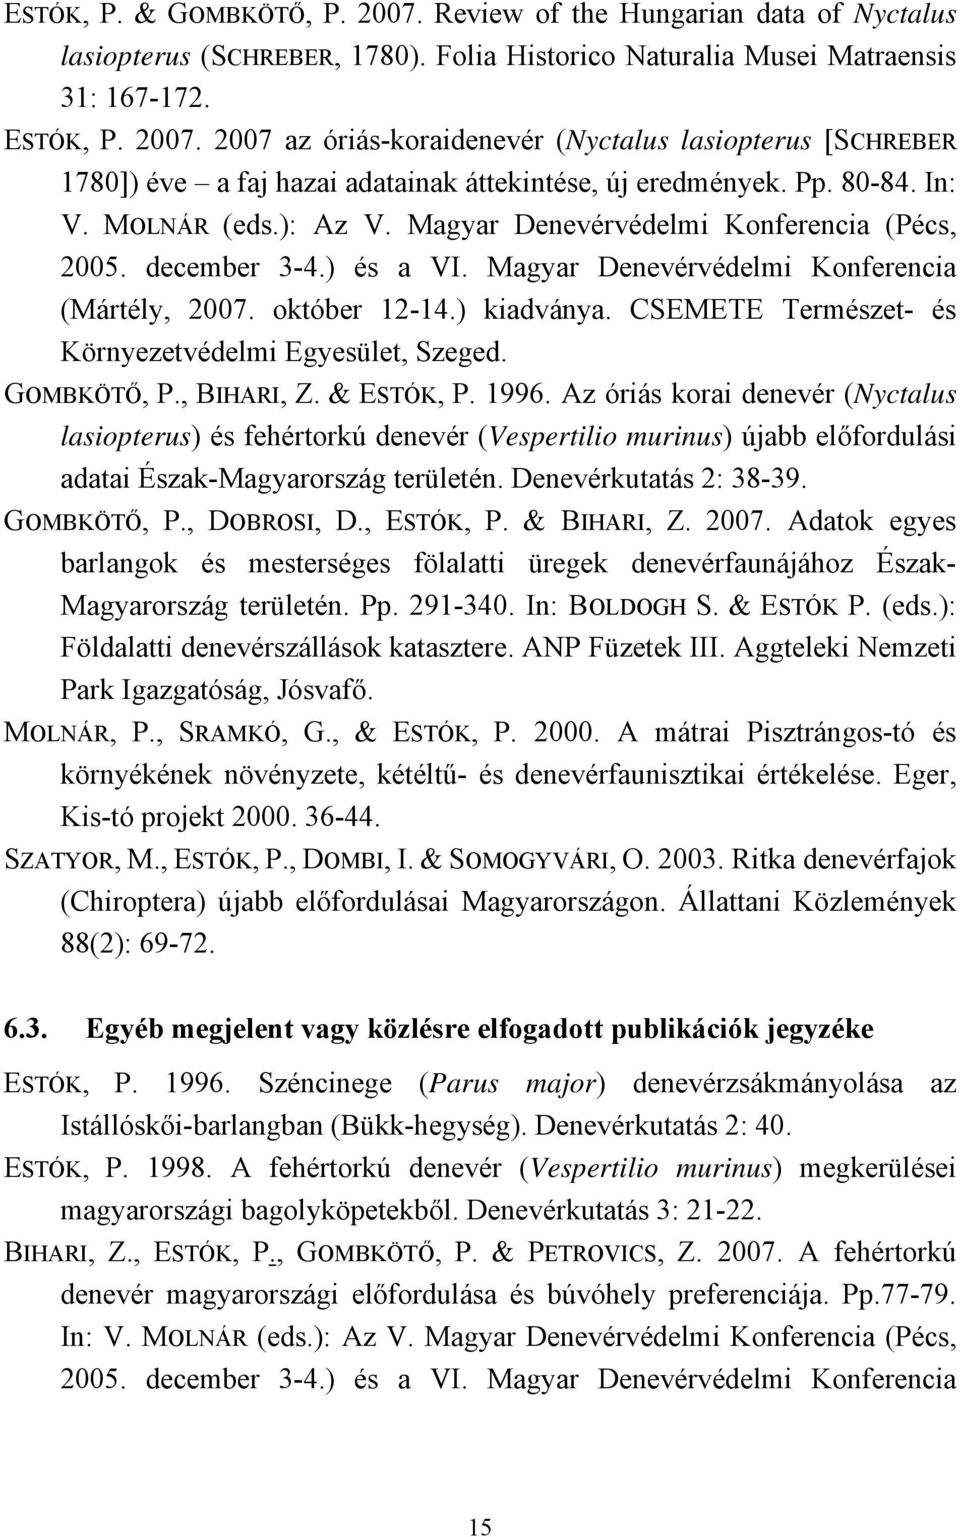 CSEMETE Természet- és Környezetvédelmi Egyesület, Szeged. GOMBKÖTŐ, P., BIHARI, Z. & ESTÓK, P. 1996.